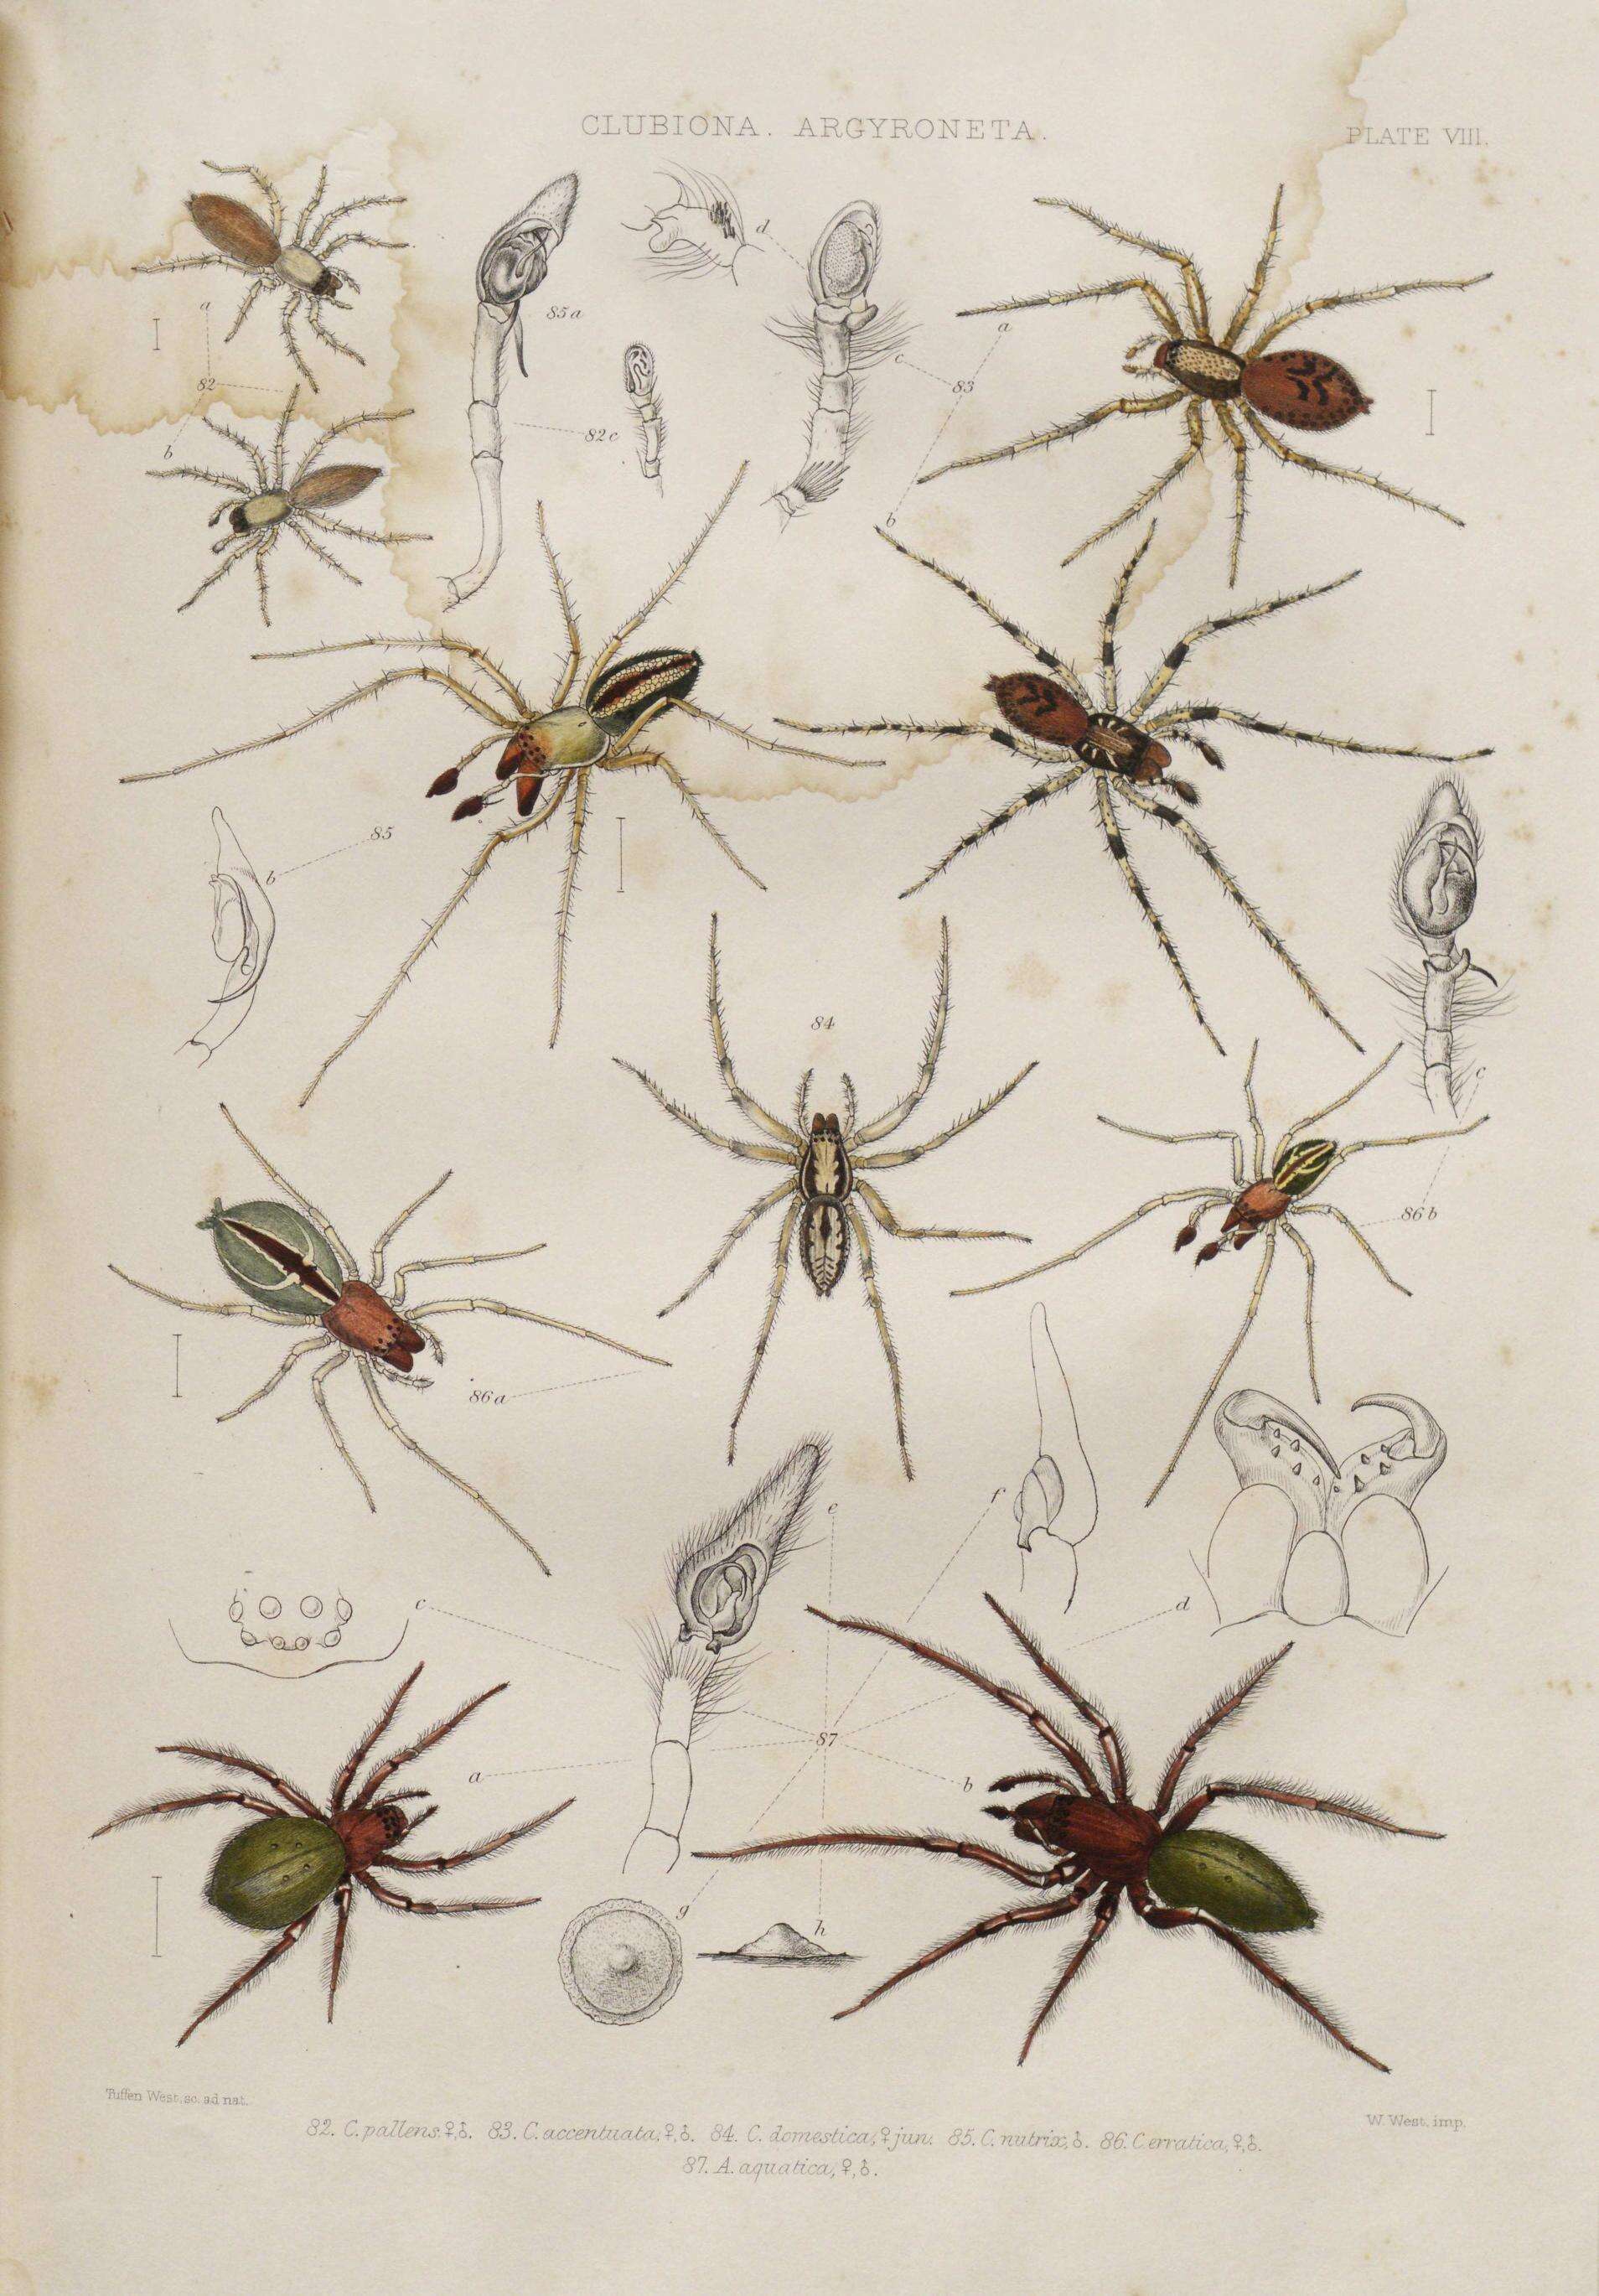 Image of Liocranum rupicola (Walckenaer 1830)